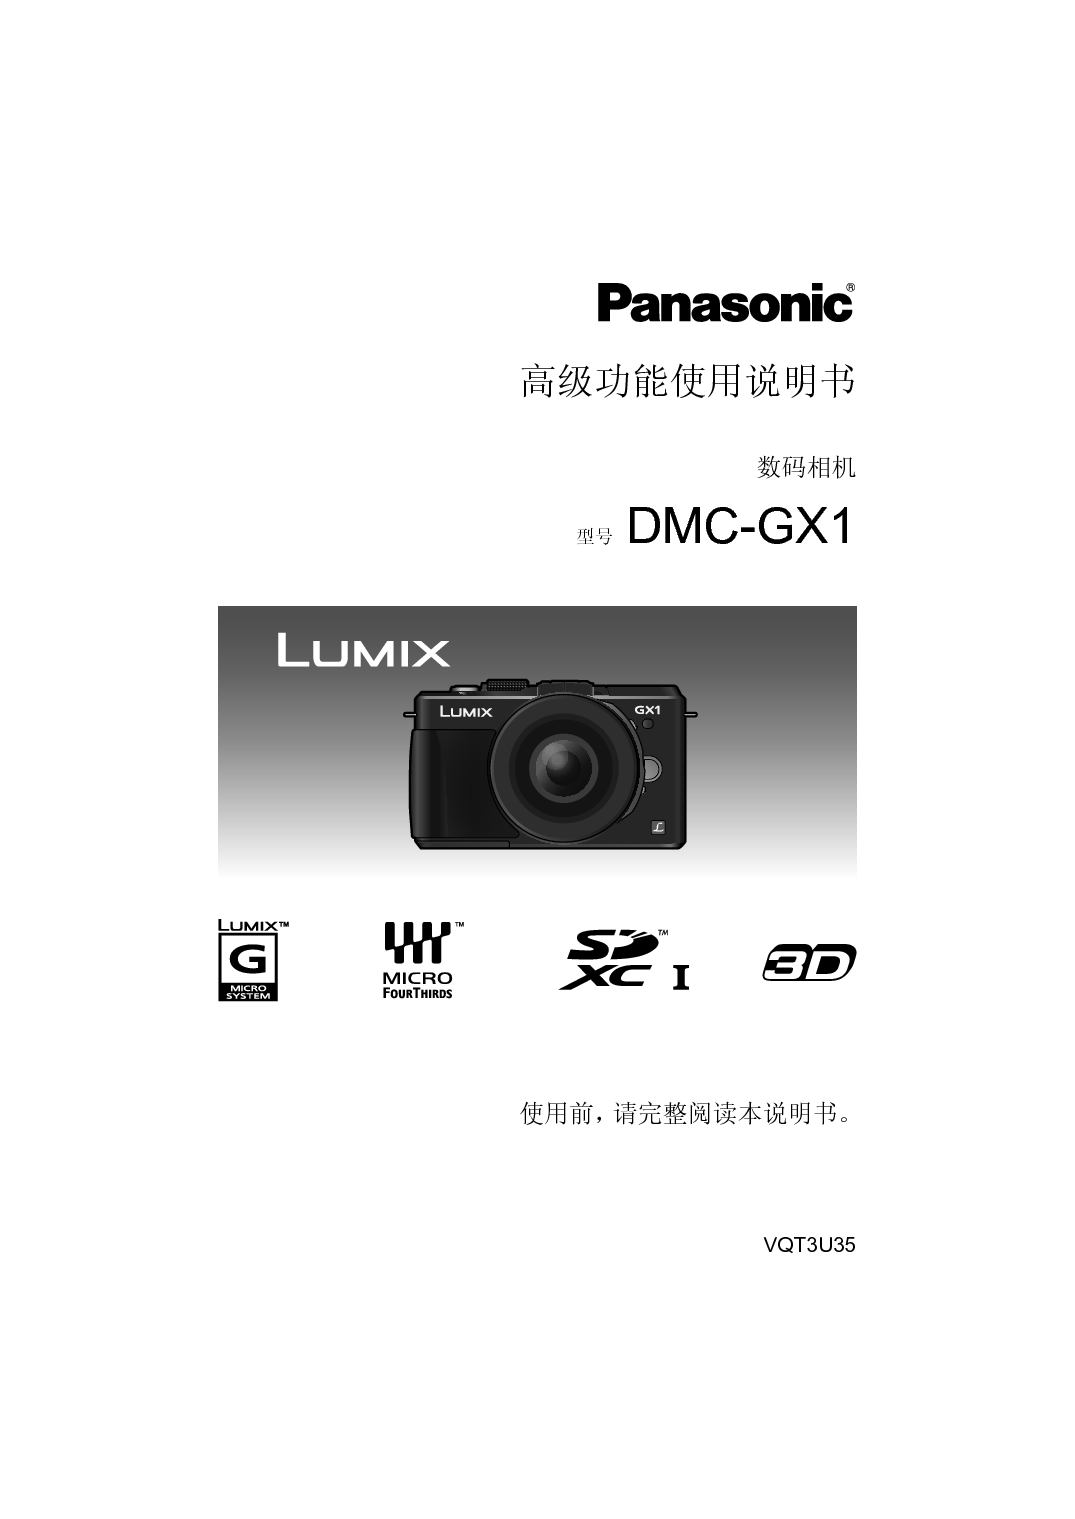 松下 Panasonic DMC-GX1GK 高级说明书 封面